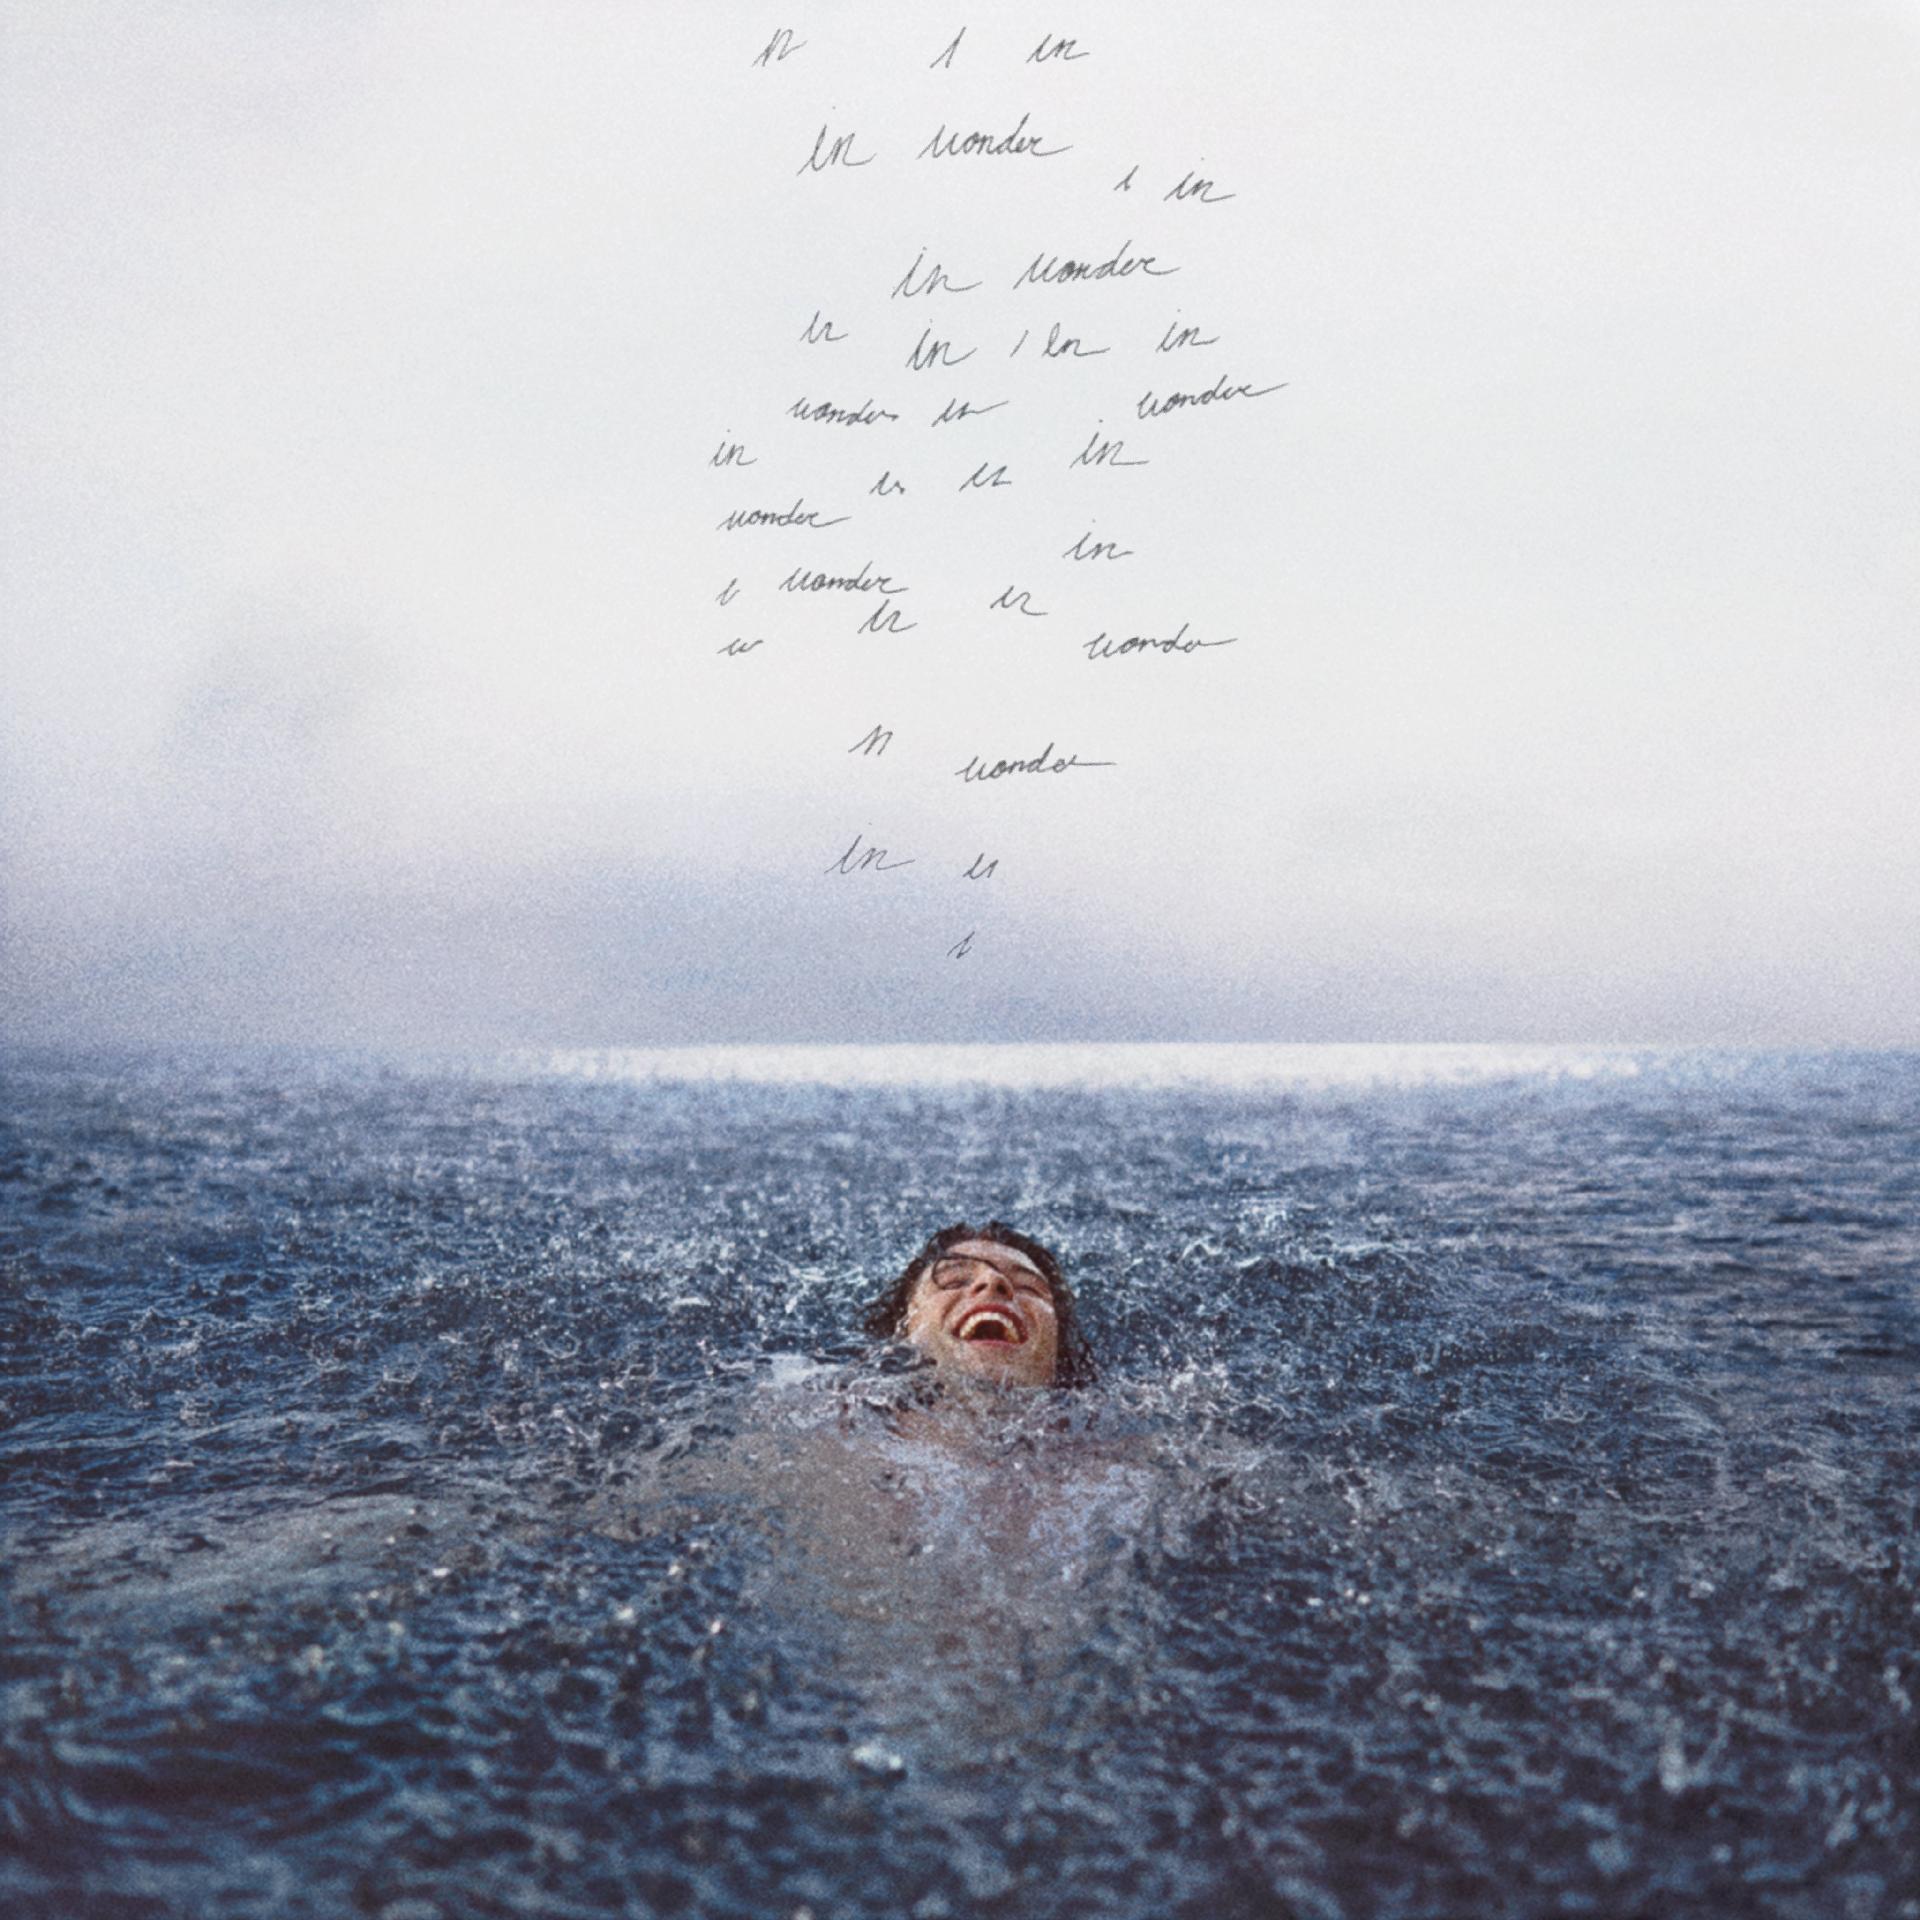 A imagem mostra a capa do álbum Wonder. Nela, Shawn Mendes está submerso em água, somente com o rosto para fora. Ele sorri e acima de sua cabeça há algumas inscrições em letra de mão. A água em que ele está é turbulenta. 